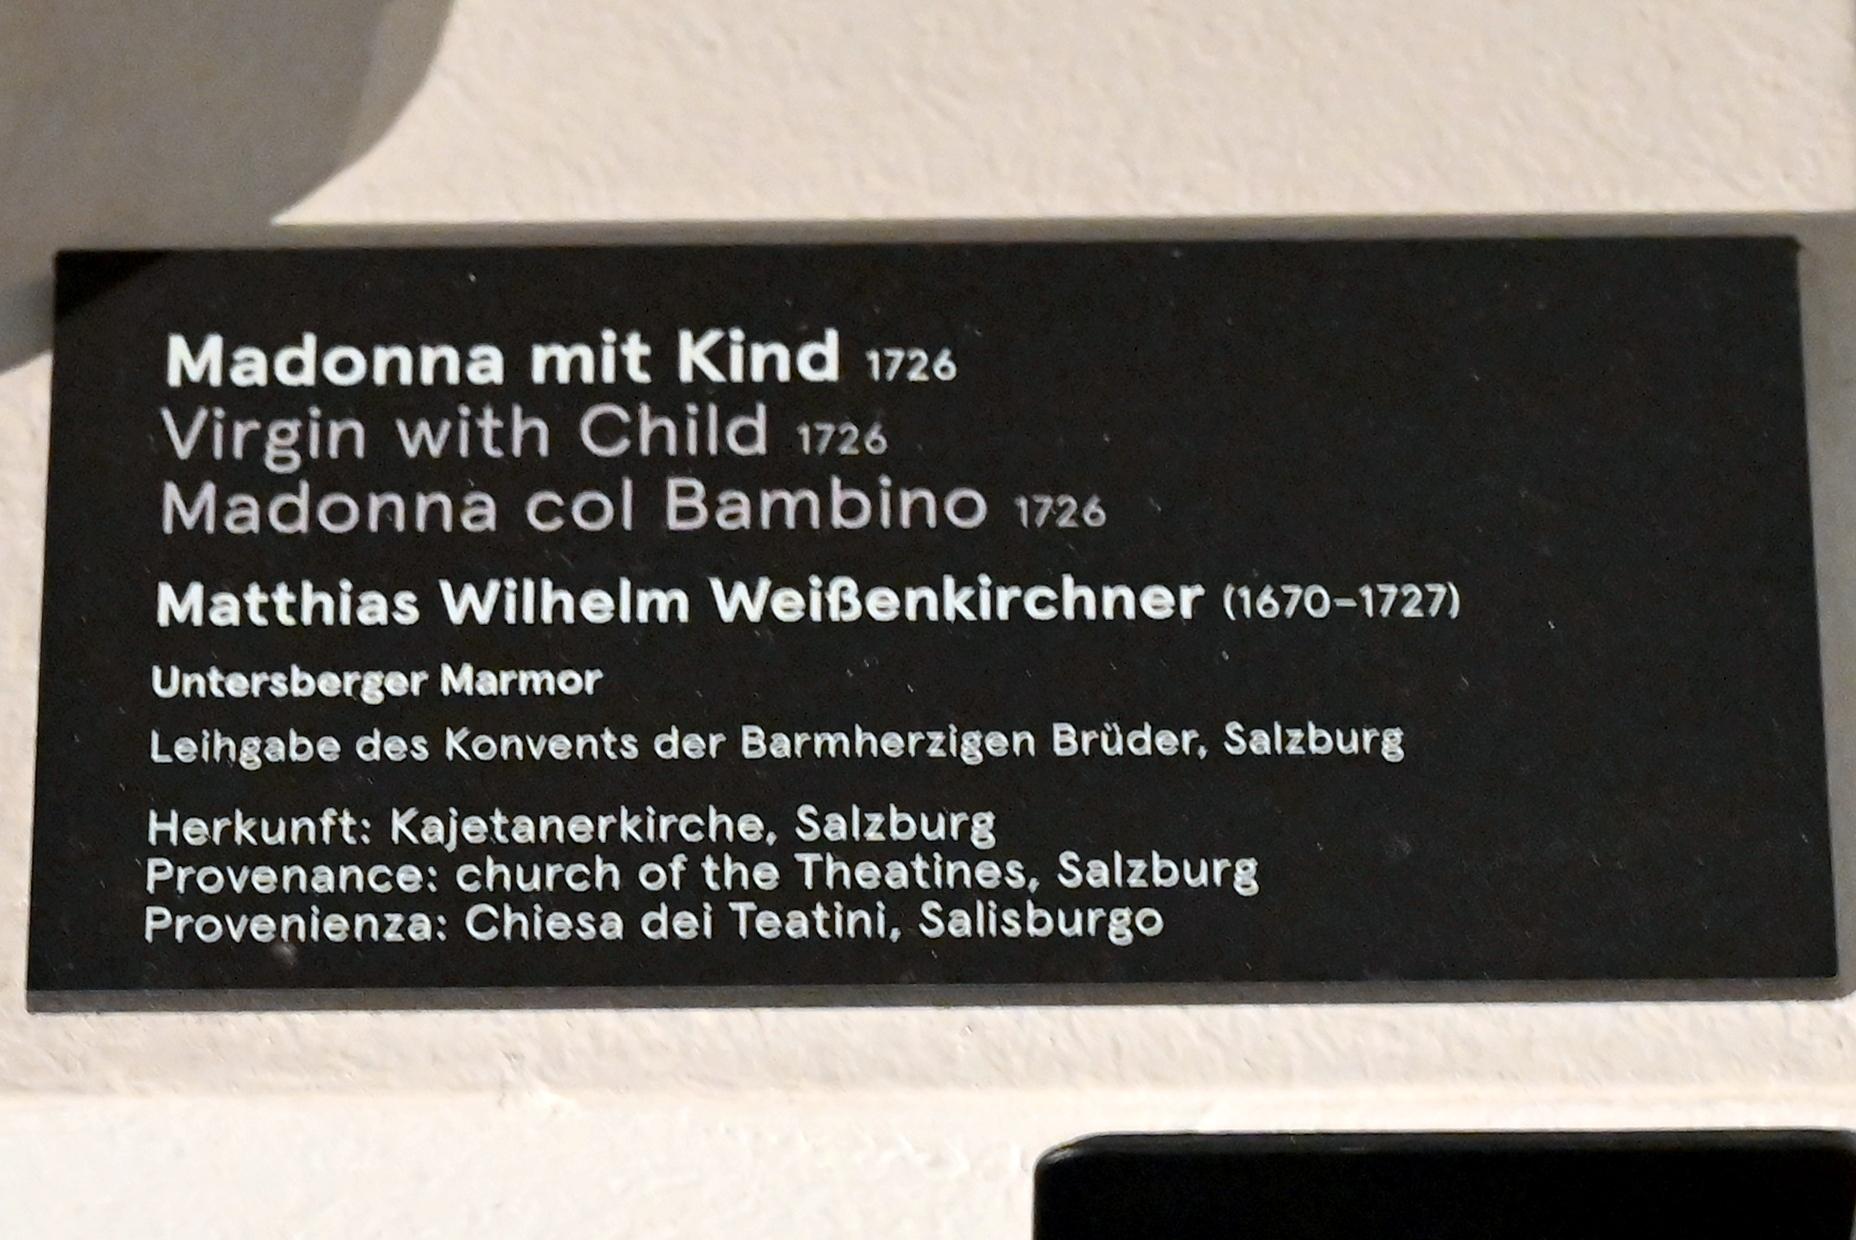 Matthias Wilhelm Weißenkirchner (1726), Madonna mit Kind, Salzburg, Kajetanerkirche, jetzt Salzburg, Dommuseum Salzburg, 1726, Bild 3/3